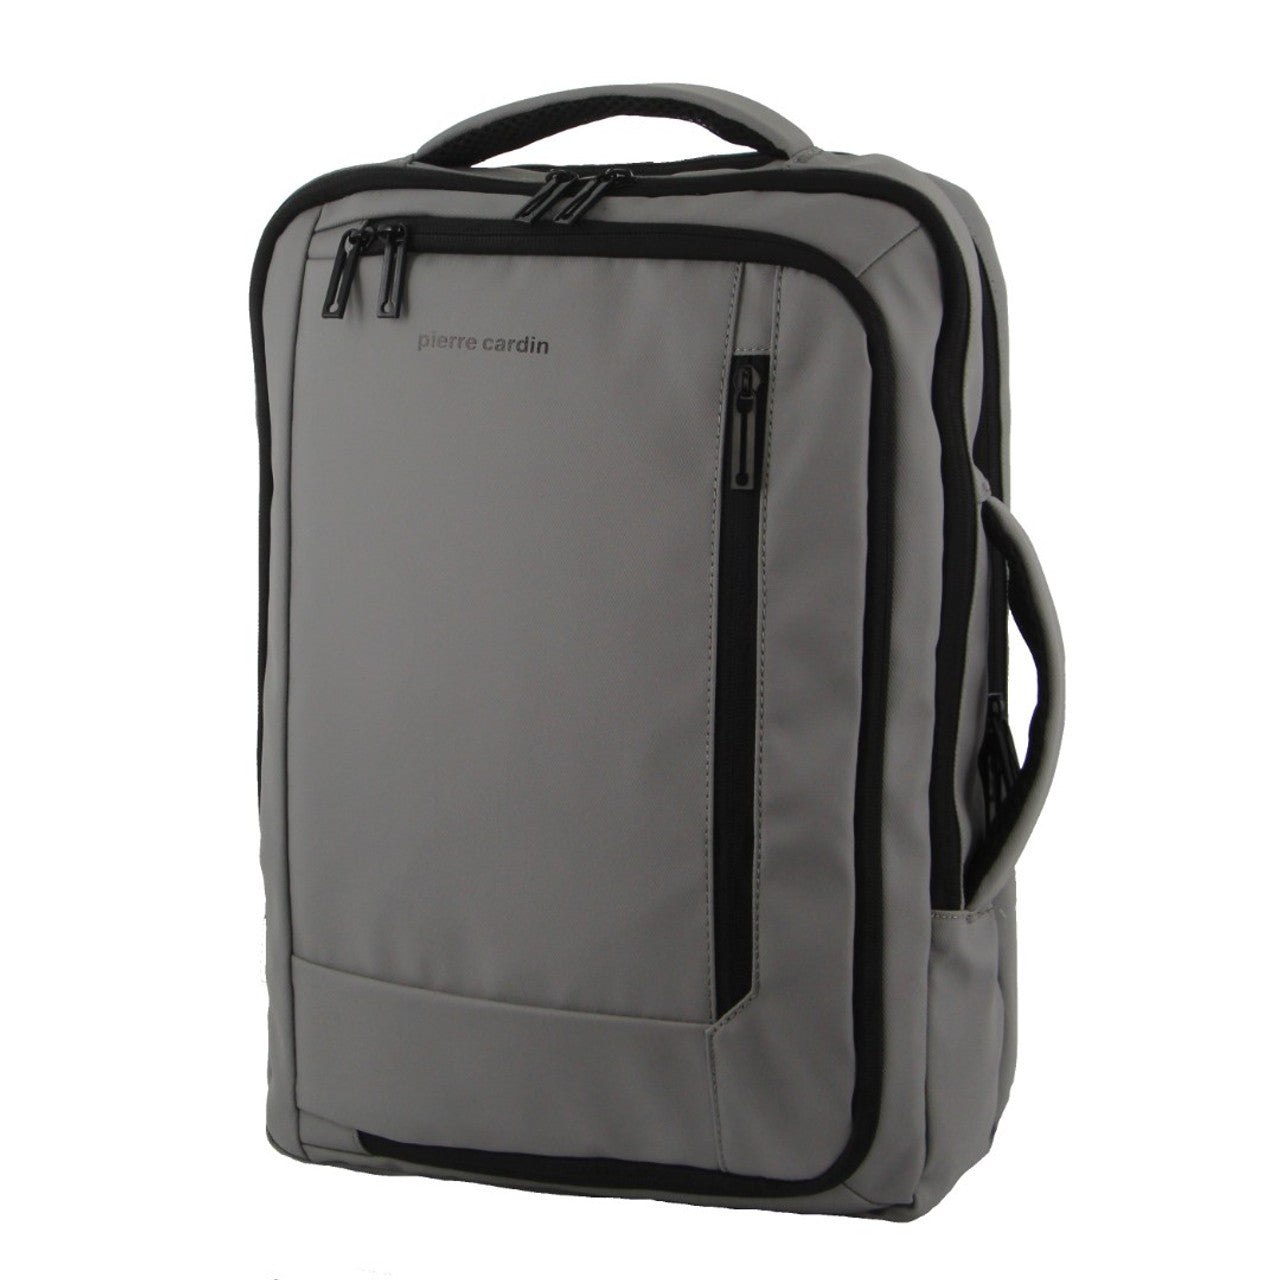 Pierre Cardin - PC3623 Top & Side handle 15in Laptop backpack w USB port - Black-1